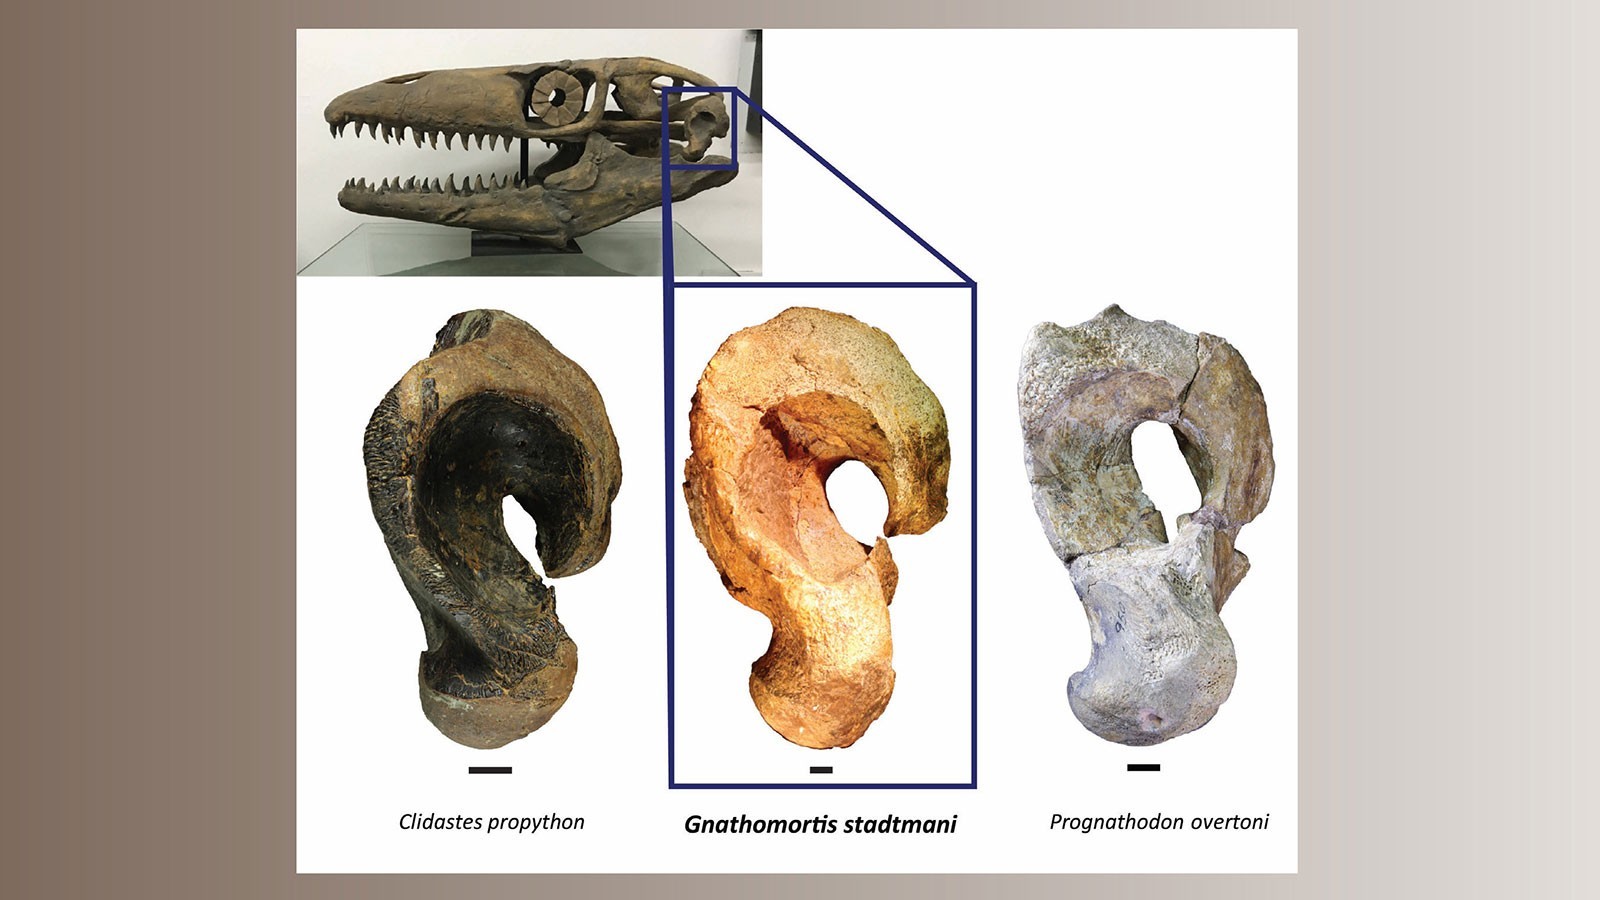 Características do quadrato, um osso na articulação da mandíbula de um fóssil de mosassauro, indicaram que os ossos eram de um gênero de mosassauro diferente do originalmente identificado. (Foto: Joshua Lively)